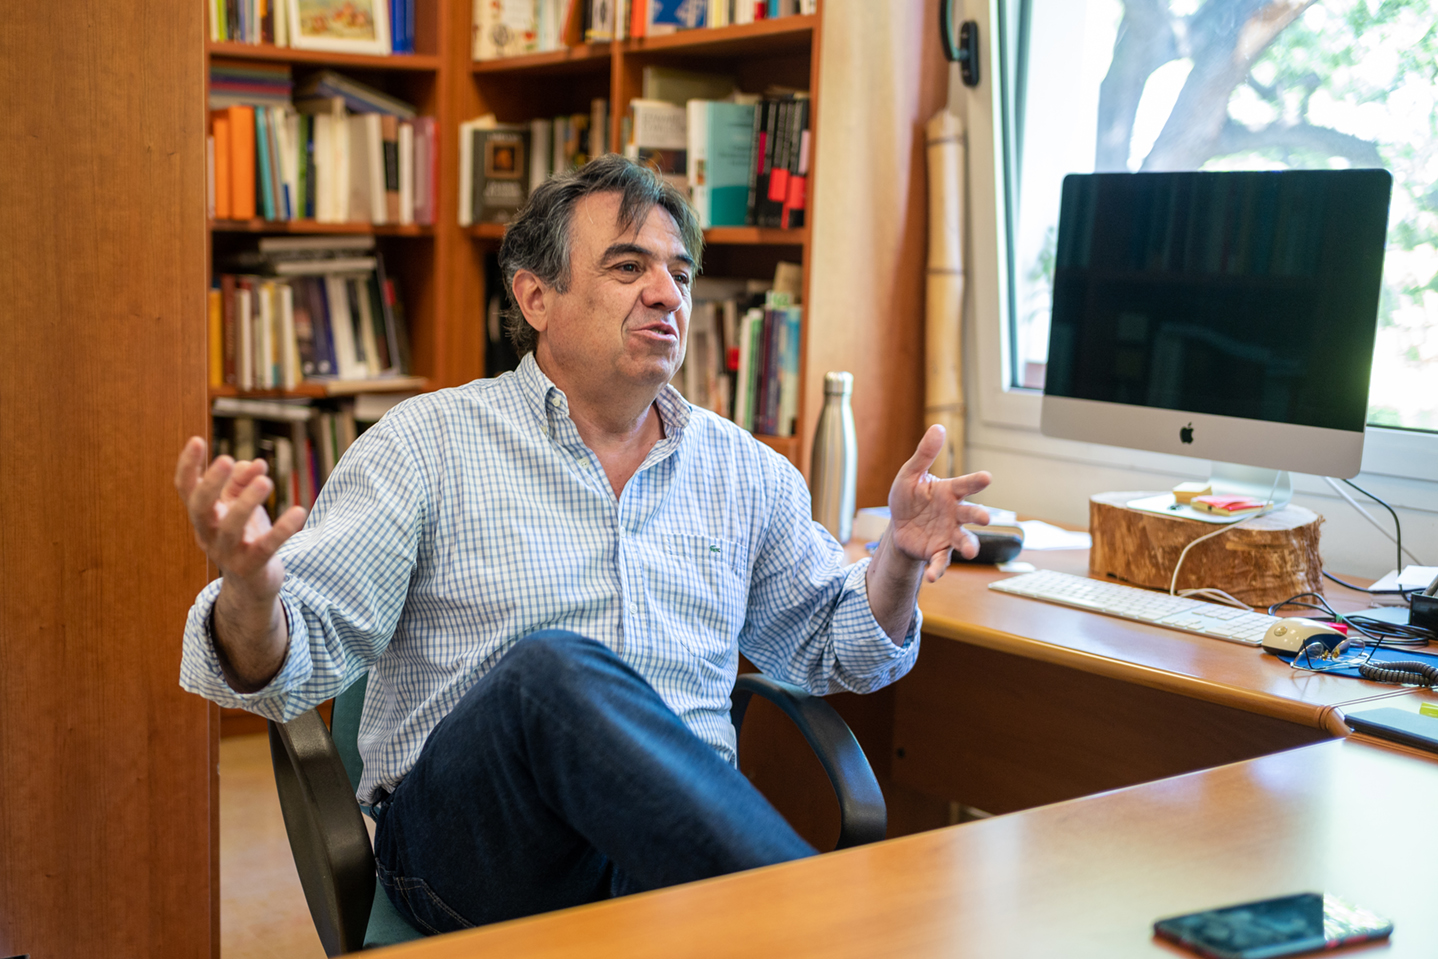 Martí Domínguez, biòleg, periodista i escriptor: “No hem debatut prou la mercantilització de la ciència”